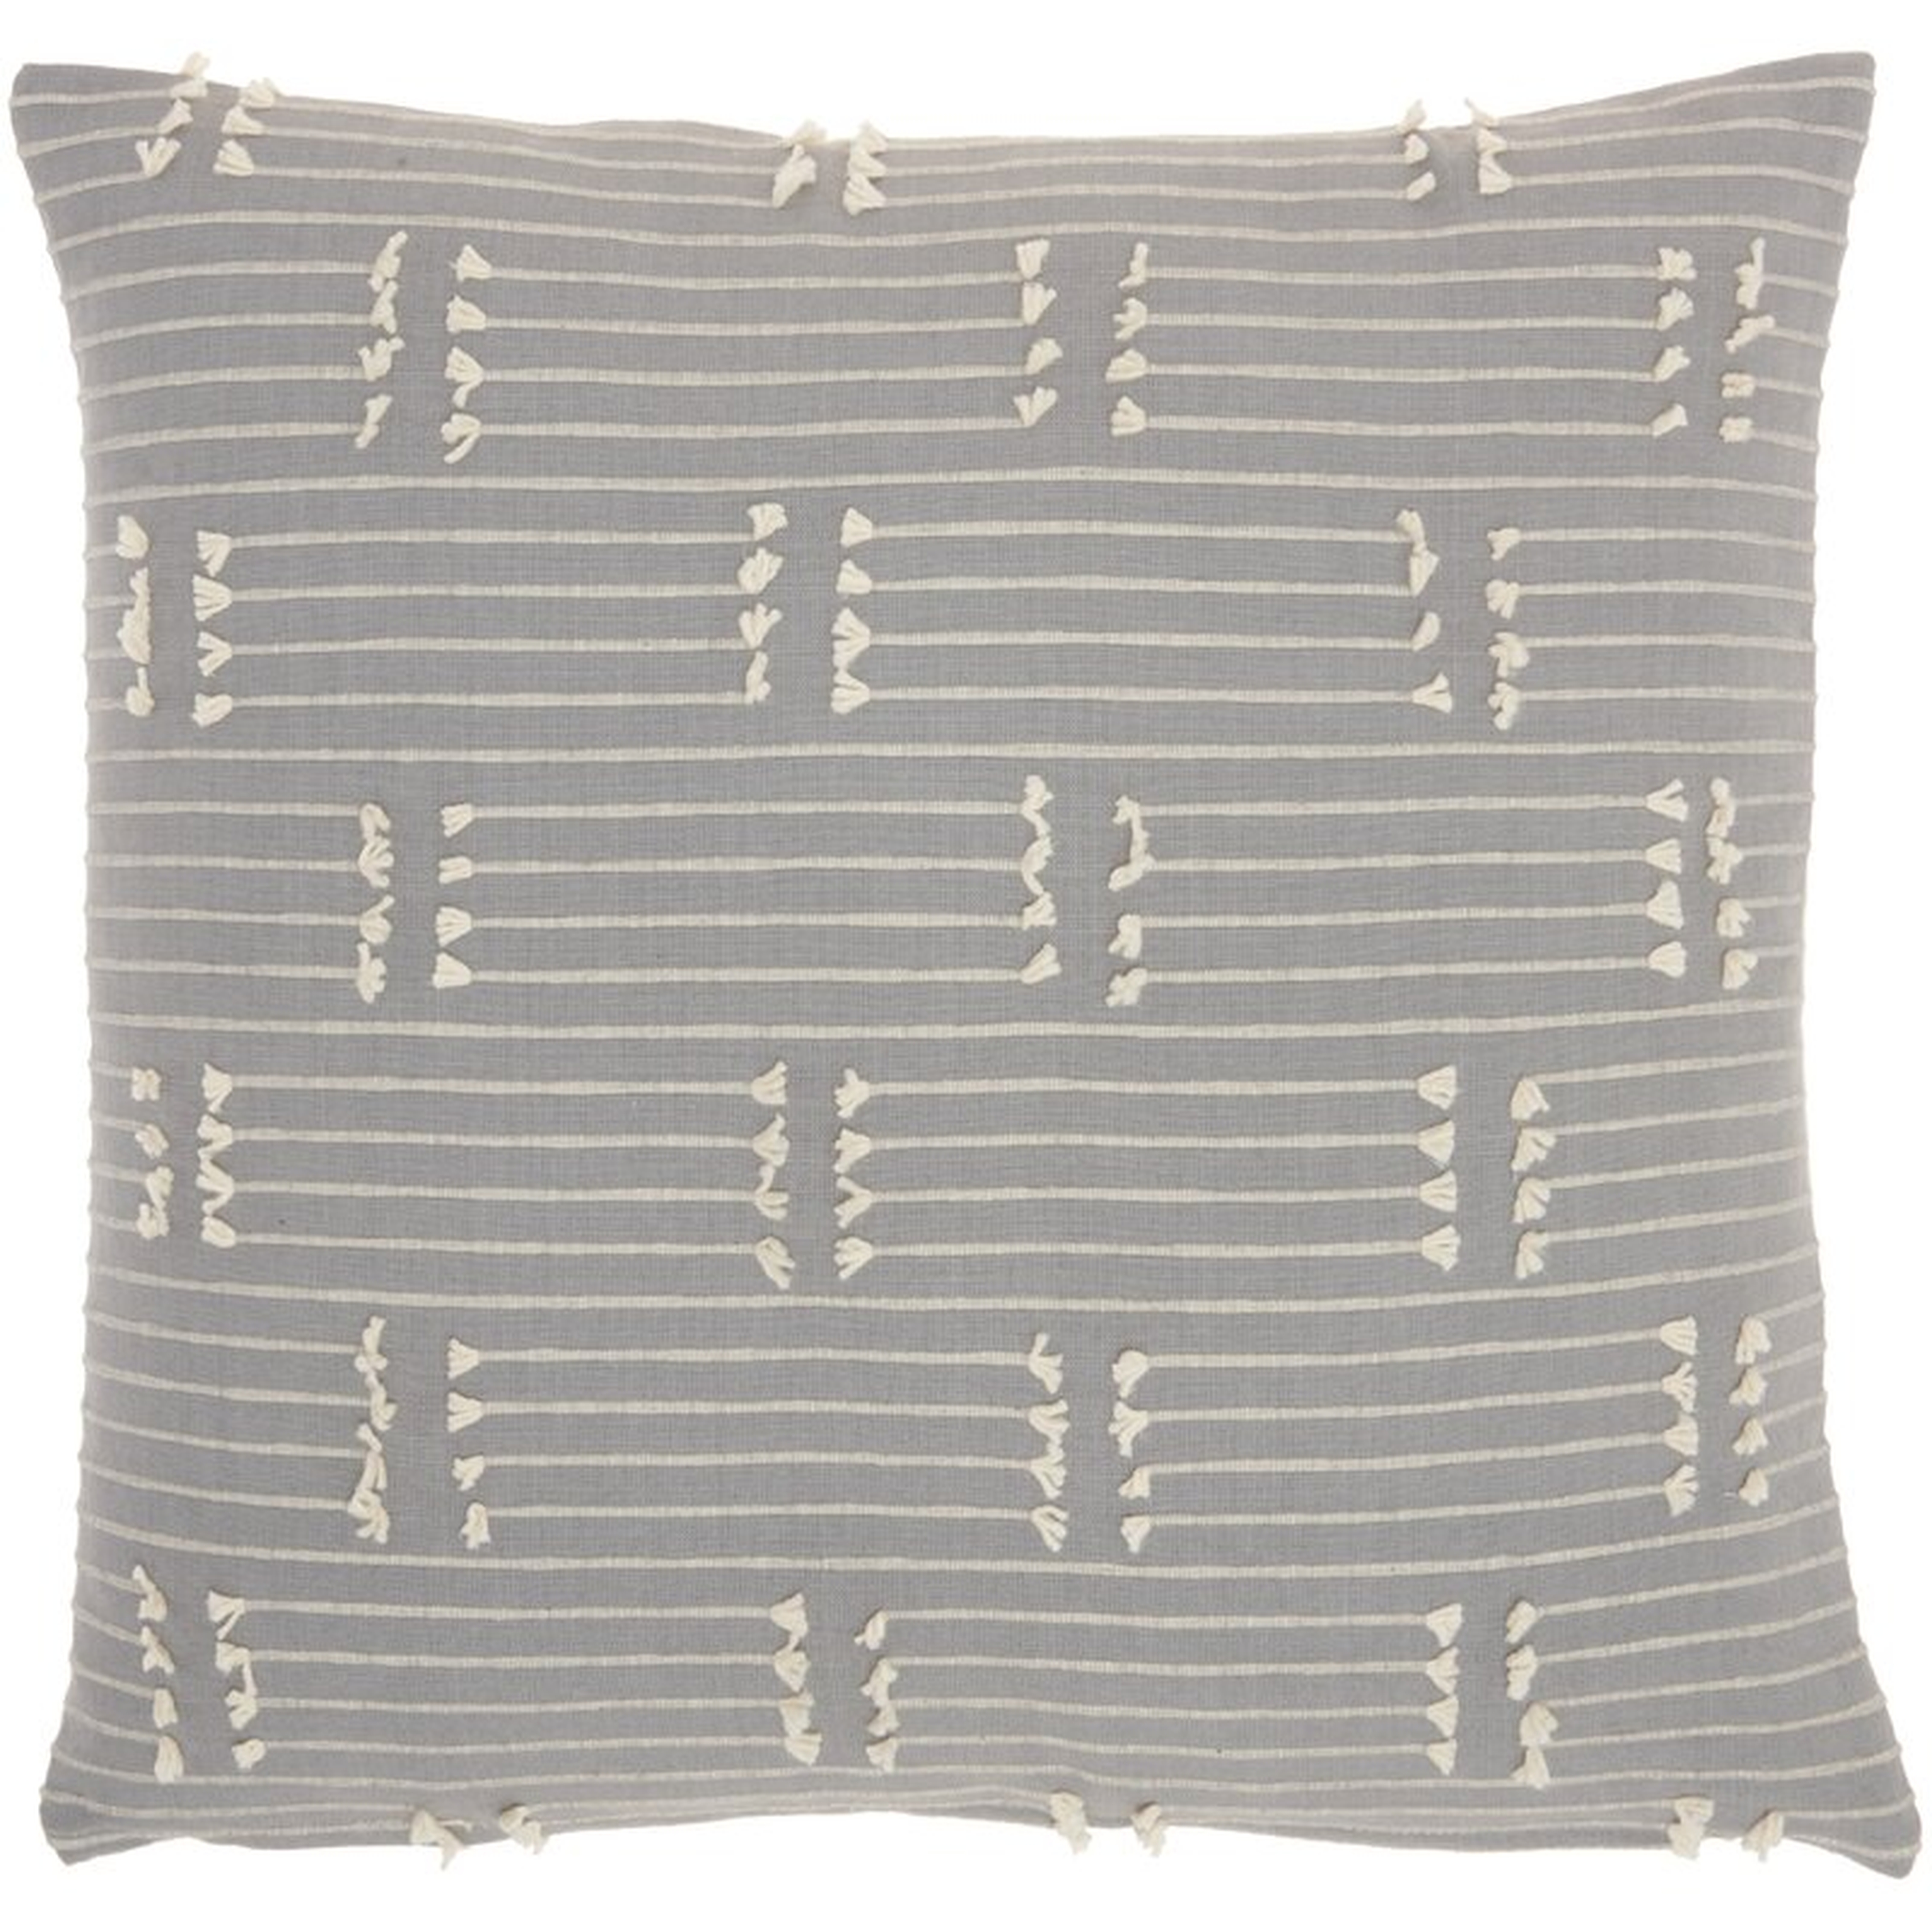 Canipe Pillow, Gray, 18" x 18" - Wayfair